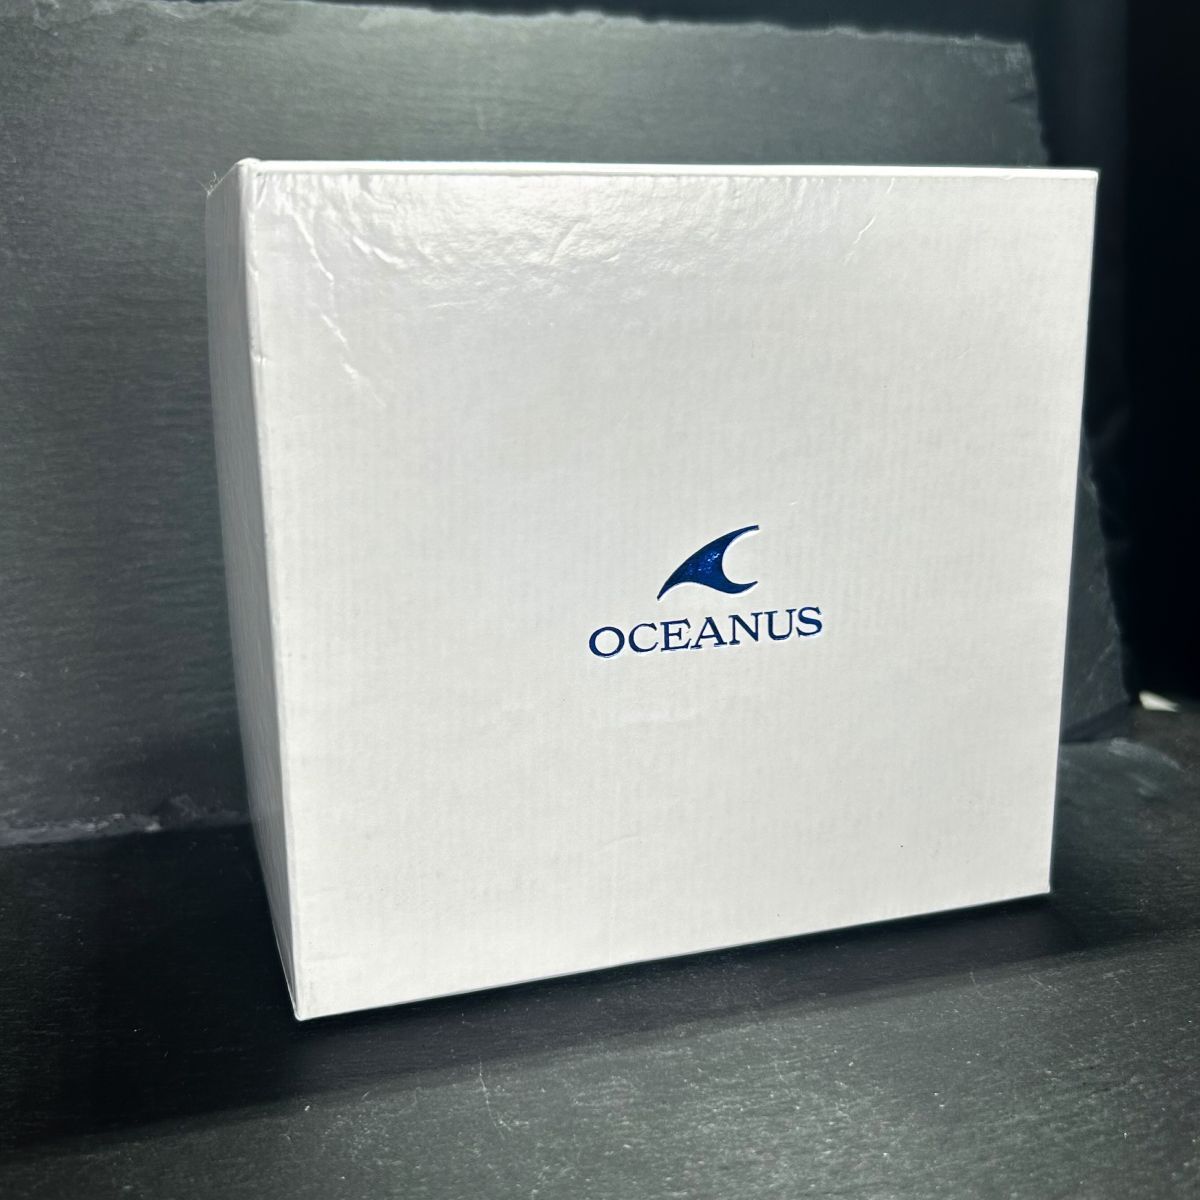  прекрасный товар CASIO Casio OCEANUS Oceanus OCW-100TDJ-1A наручные часы жесткий солнечные радиоволны солнечный аналог календарь титан рабочее состояние подтверждено 